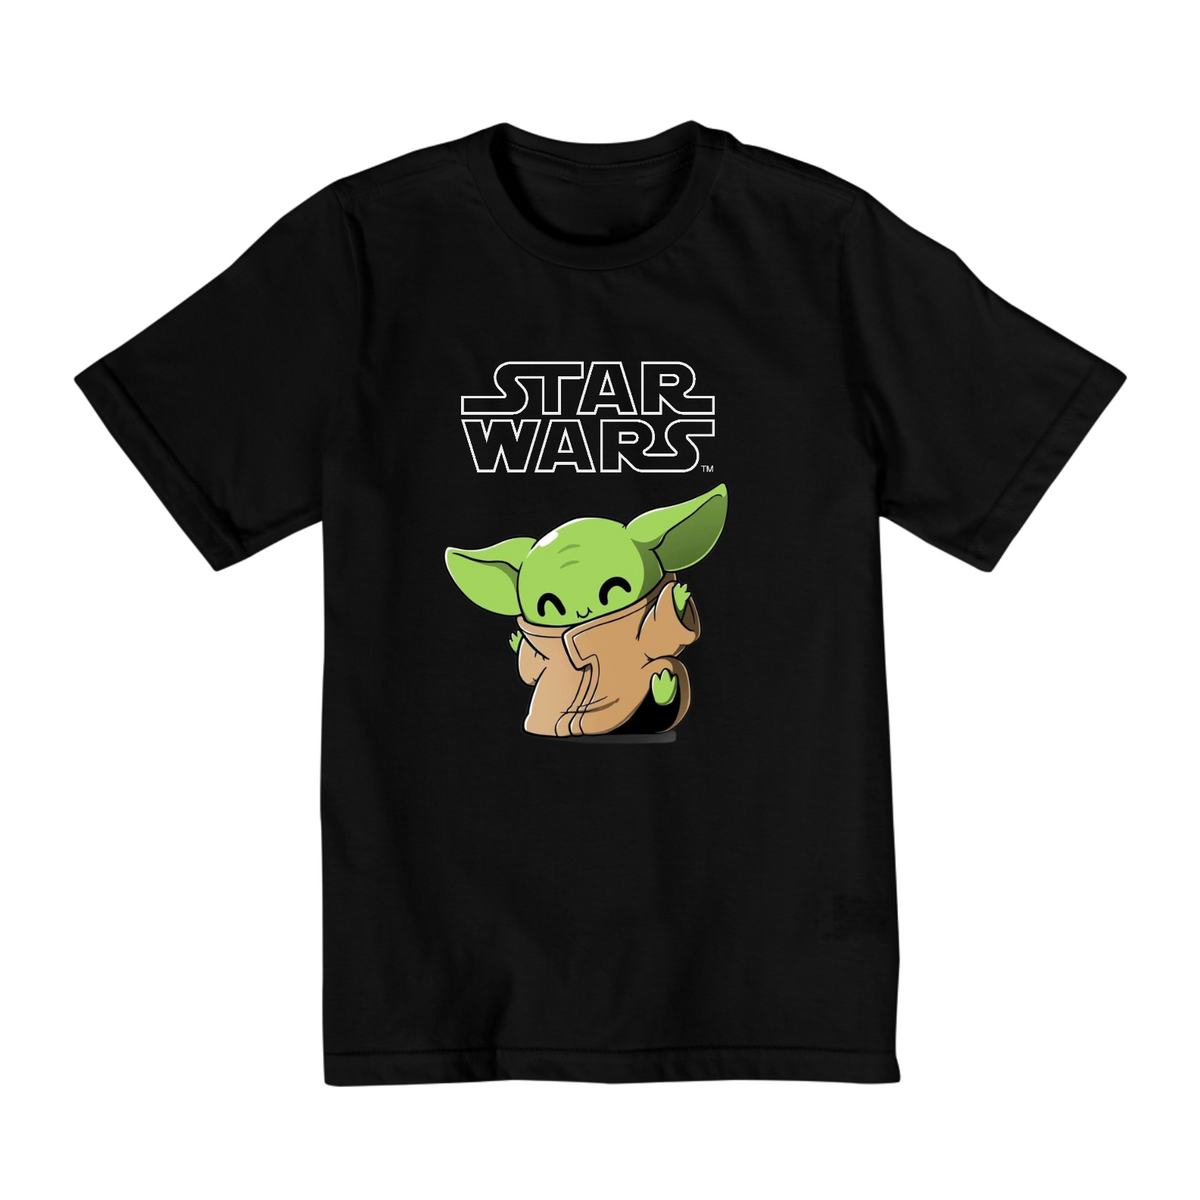 Nome do produto: Coleção Star Wars - Camiseta infantil 10 a 14 anos - Yoda